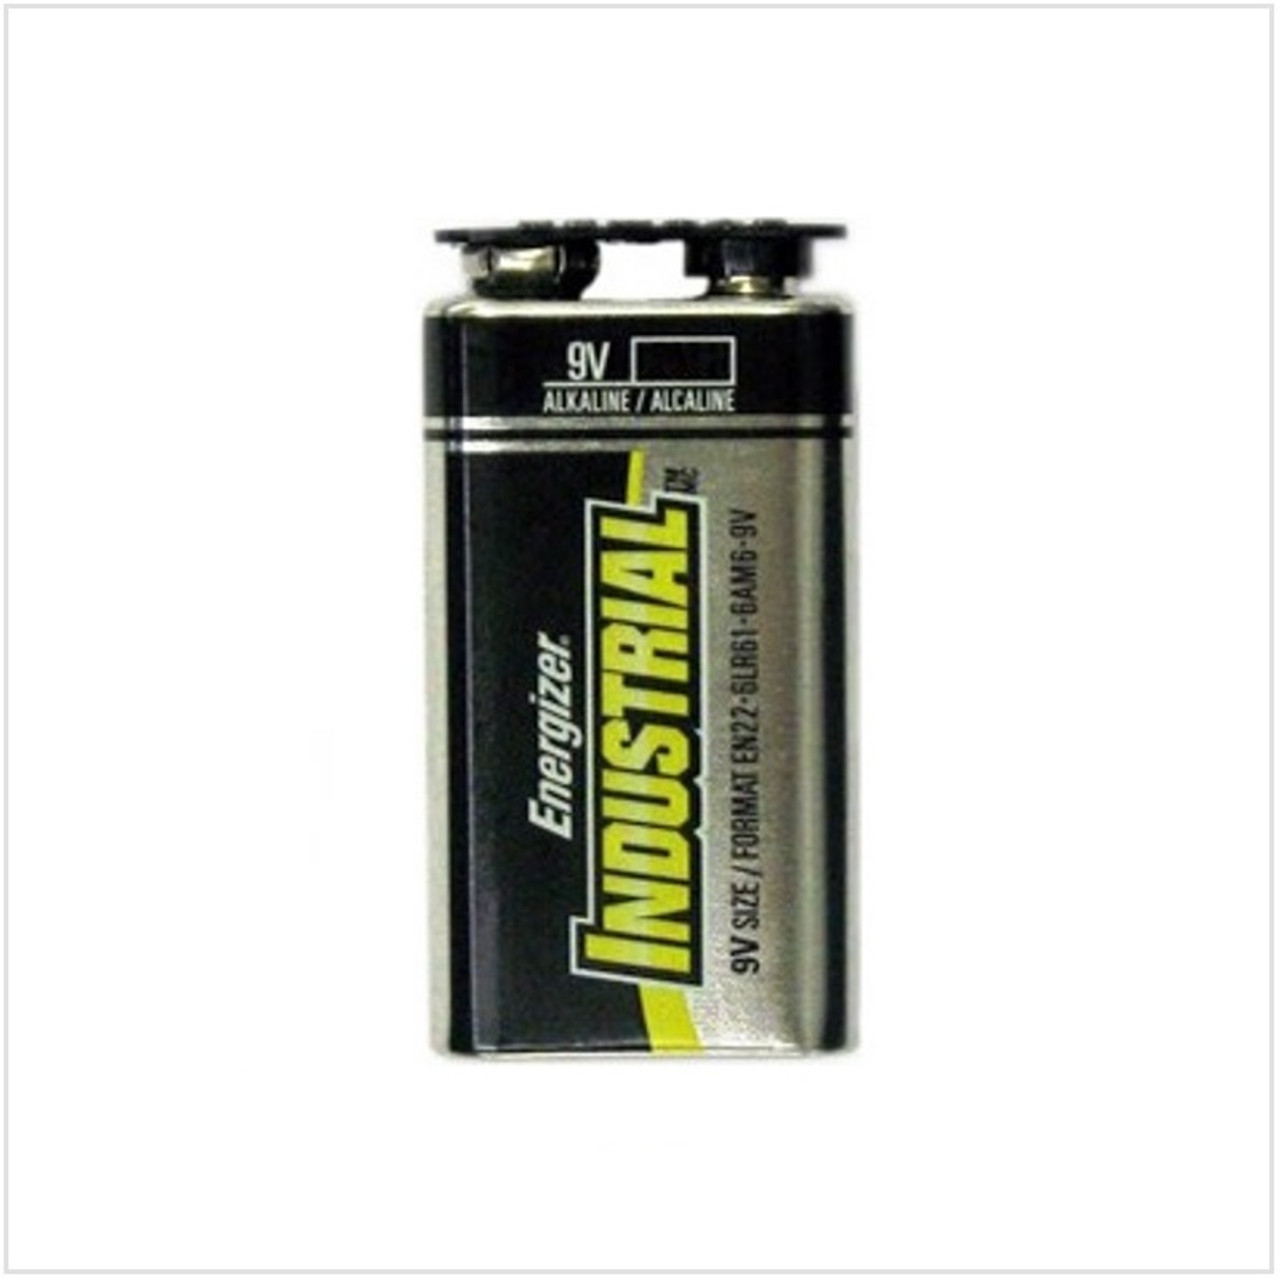 6LR61 Energizer - 9V ENERGIZER - 9V Alkaline Battery 1 Pack